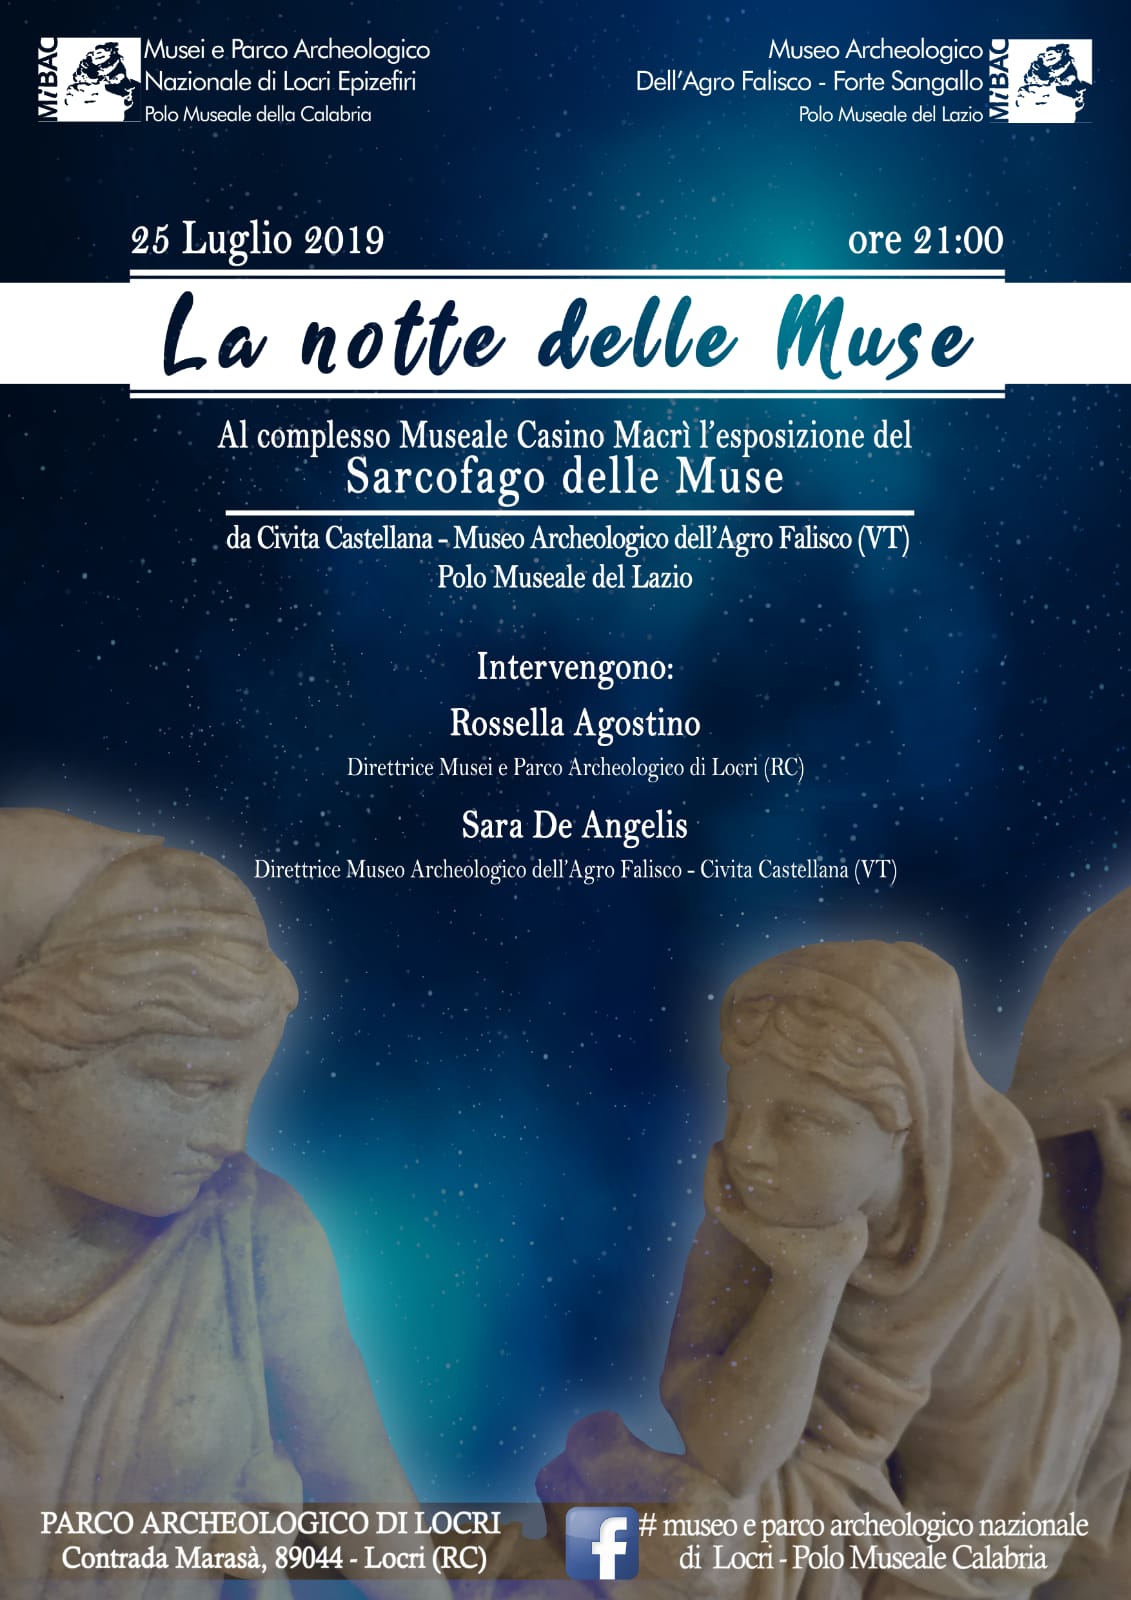 La notte delle muse Esposizione del sarcofago delle muse Complesso monumentale Casino Macrì Parco Archeologico di Locri 25 luglio 2019 – Ore 21.00